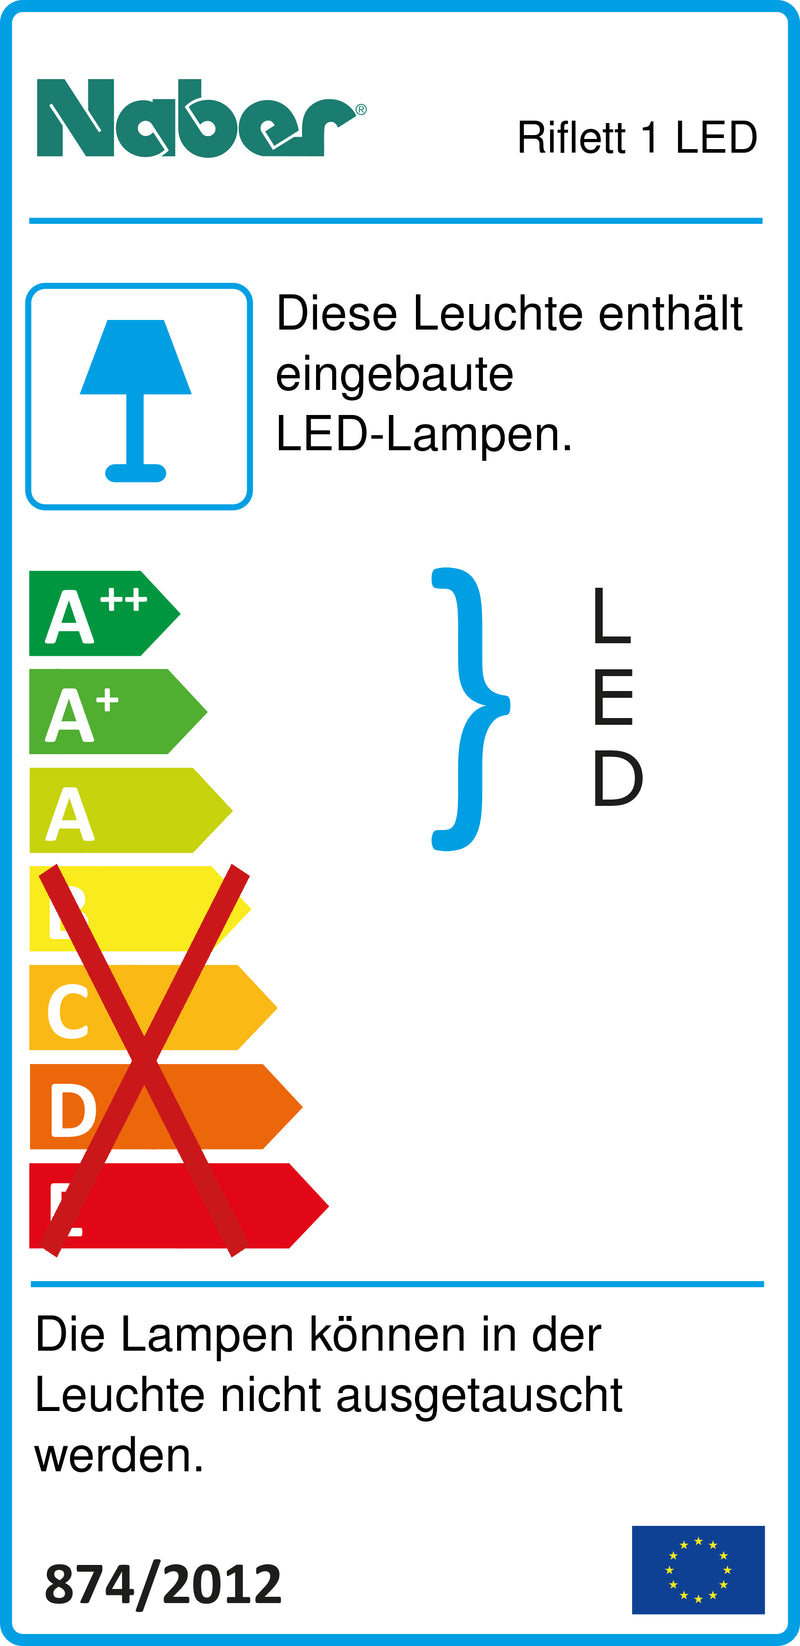 E-Label zu Zeichnung zu Riflett 1 LED als Variante Set-5, 3000 K warmweiß von Naber GmbH in der Kategorie Lichttechnik in Österreich auf conceptshop.at